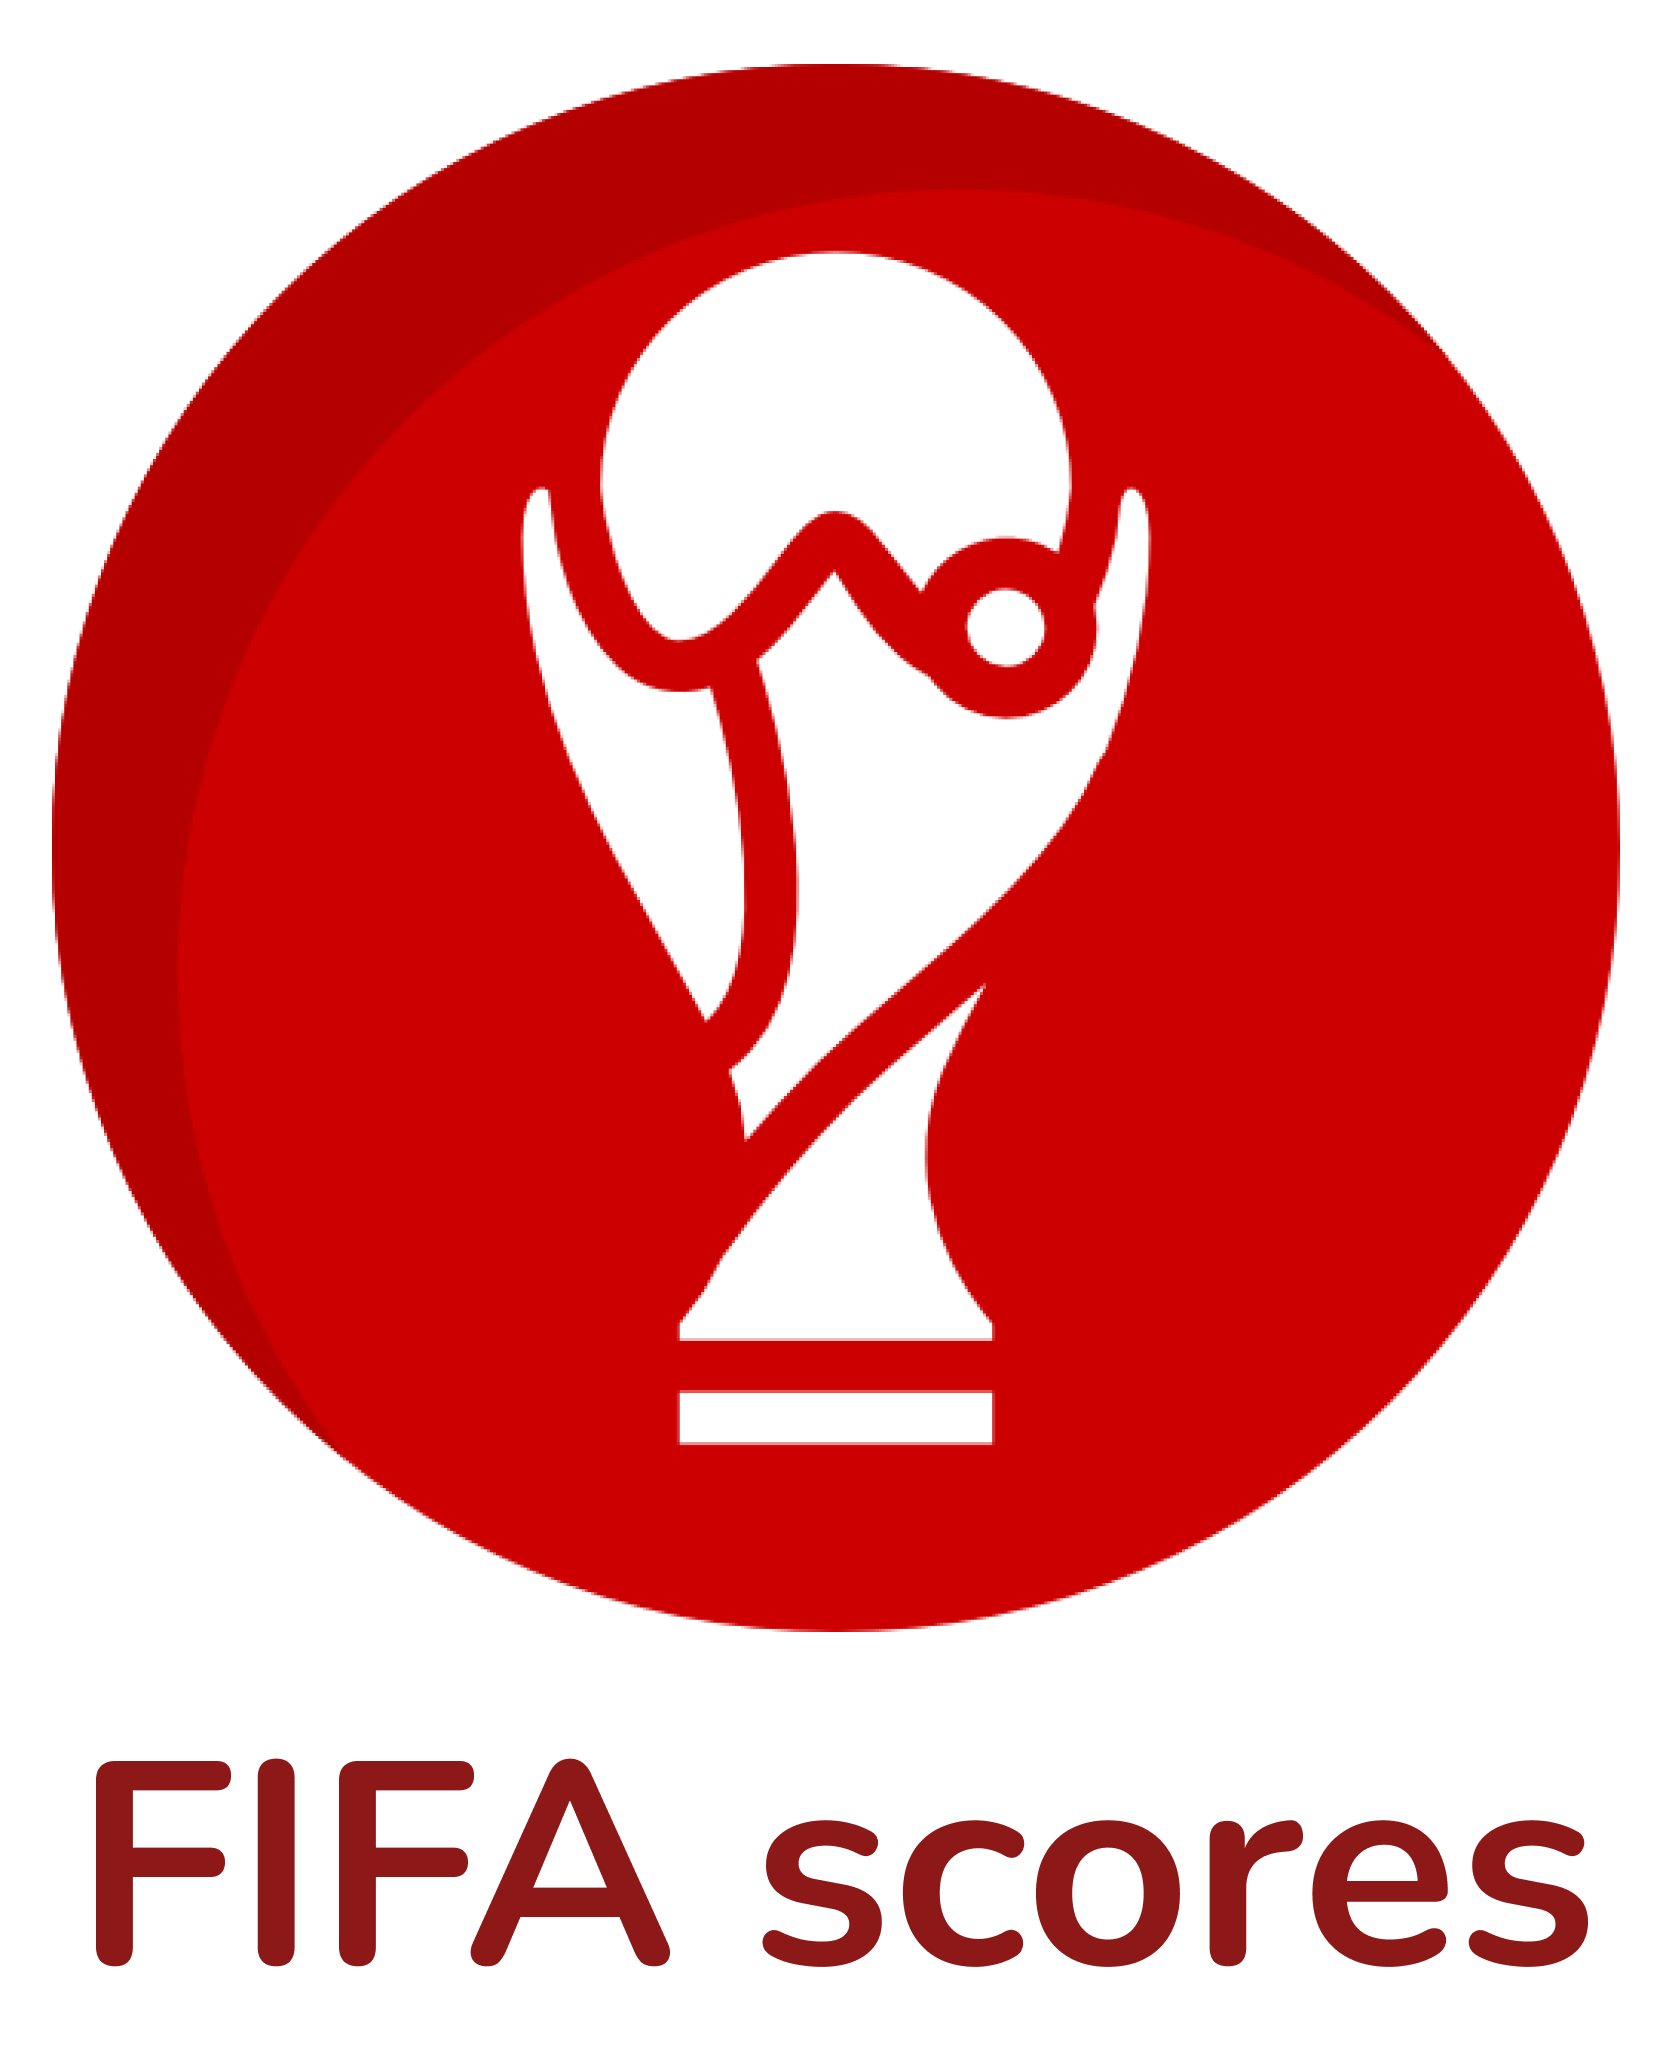 FIFA Scores